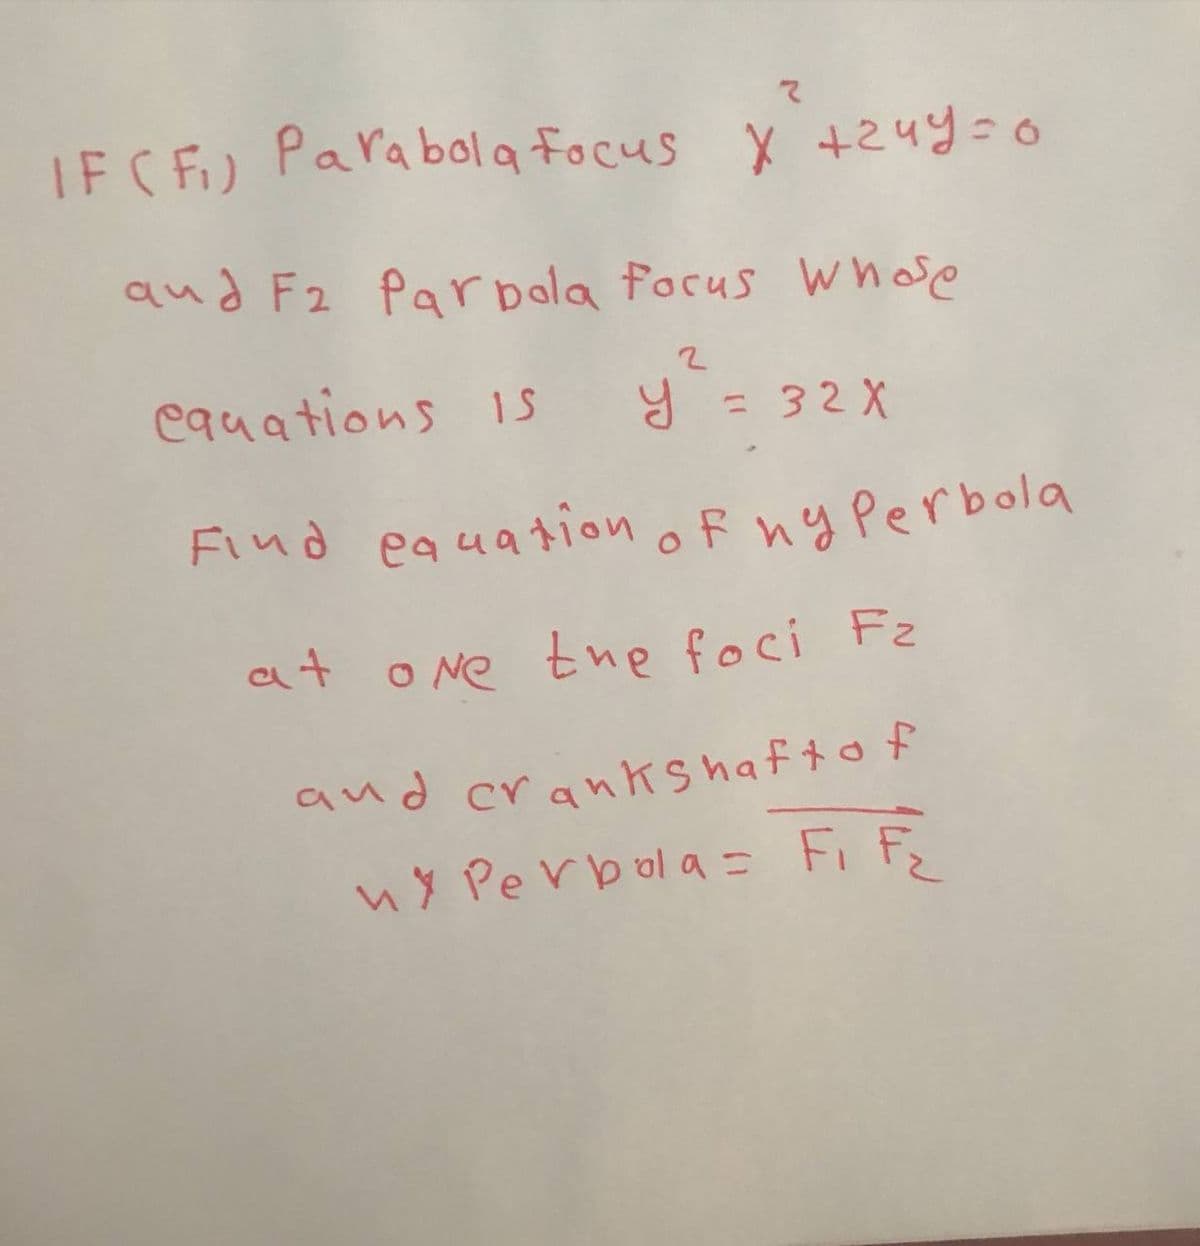 マ
IFC F) Parabola focus
X +24y=0
qud F2 Parbola focus Whoe
cquations 1s
Y = 32 X
%3D
Find eauation oF ny Perbola
at o Ne tne foci Fz
ny Perbola= Fi F
